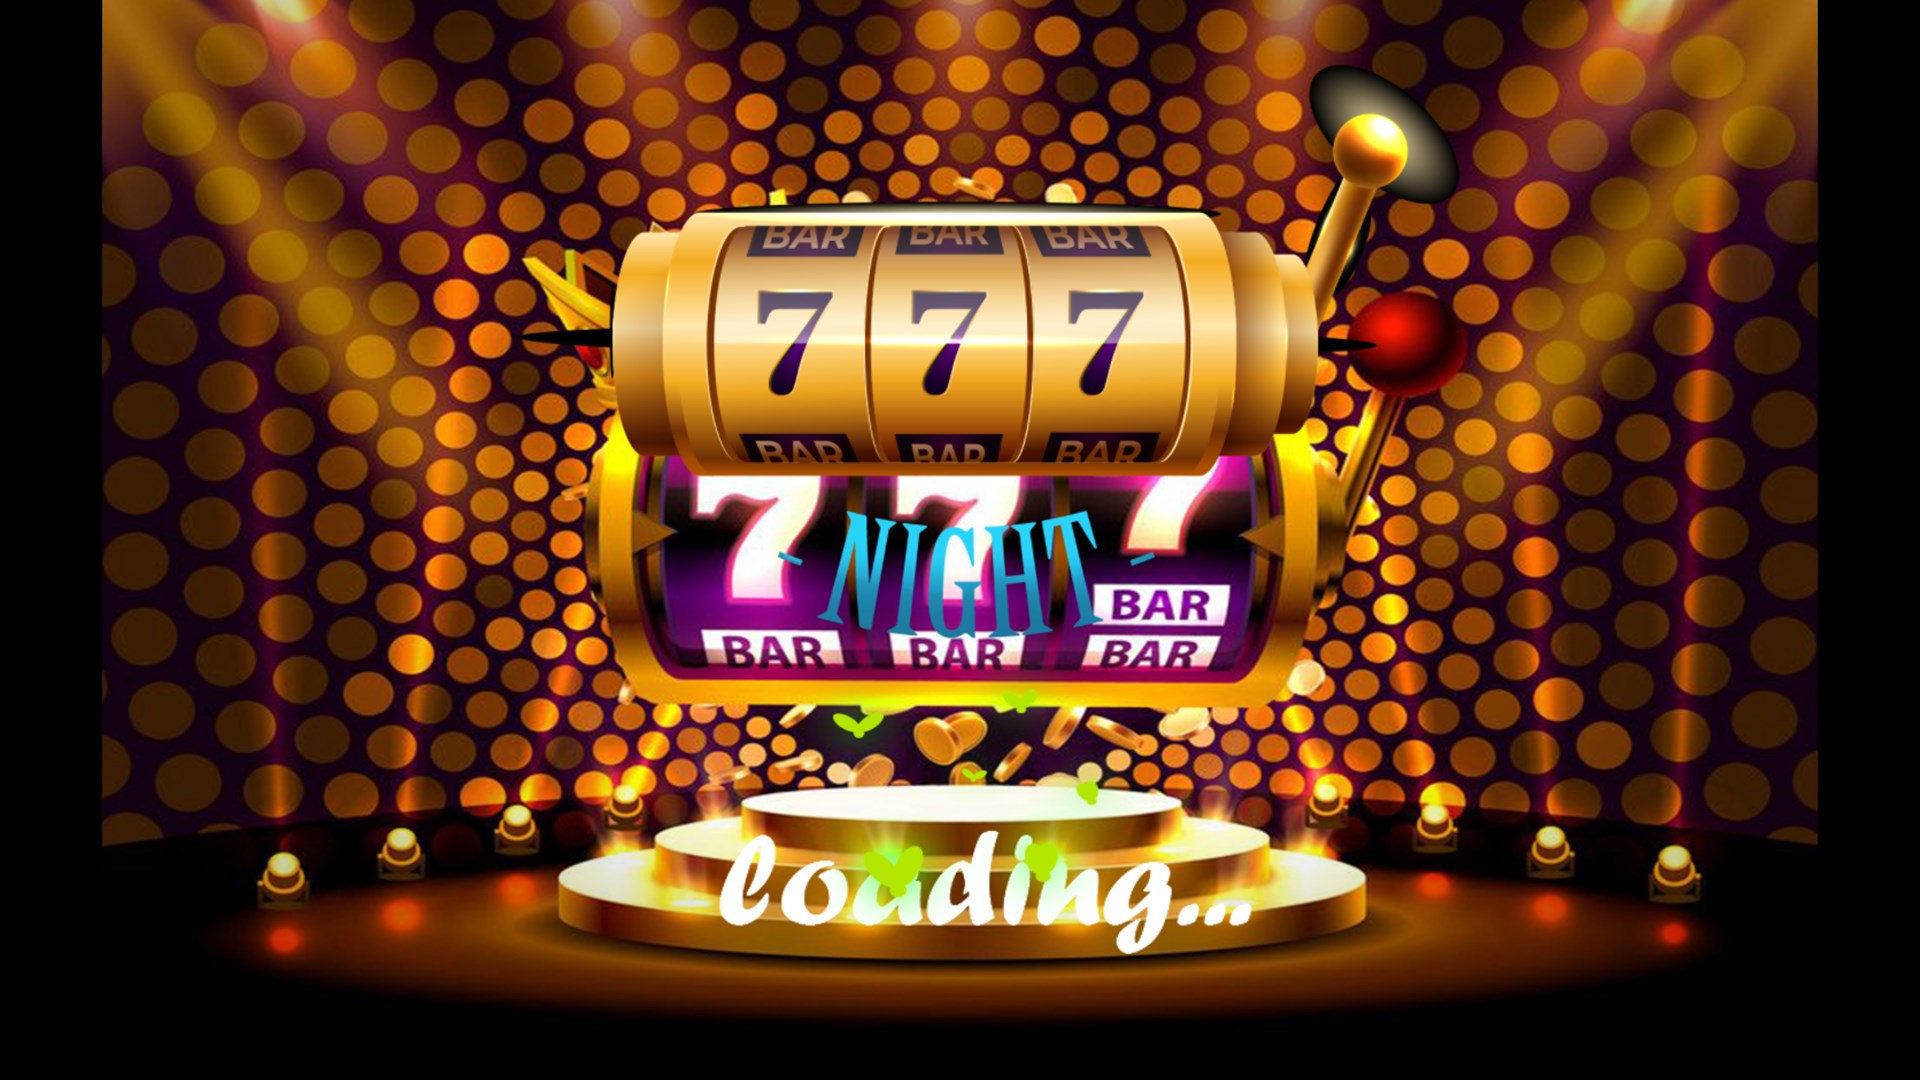 Get 777 Classic Slots Vegas Casino Machine - Microsoft Store